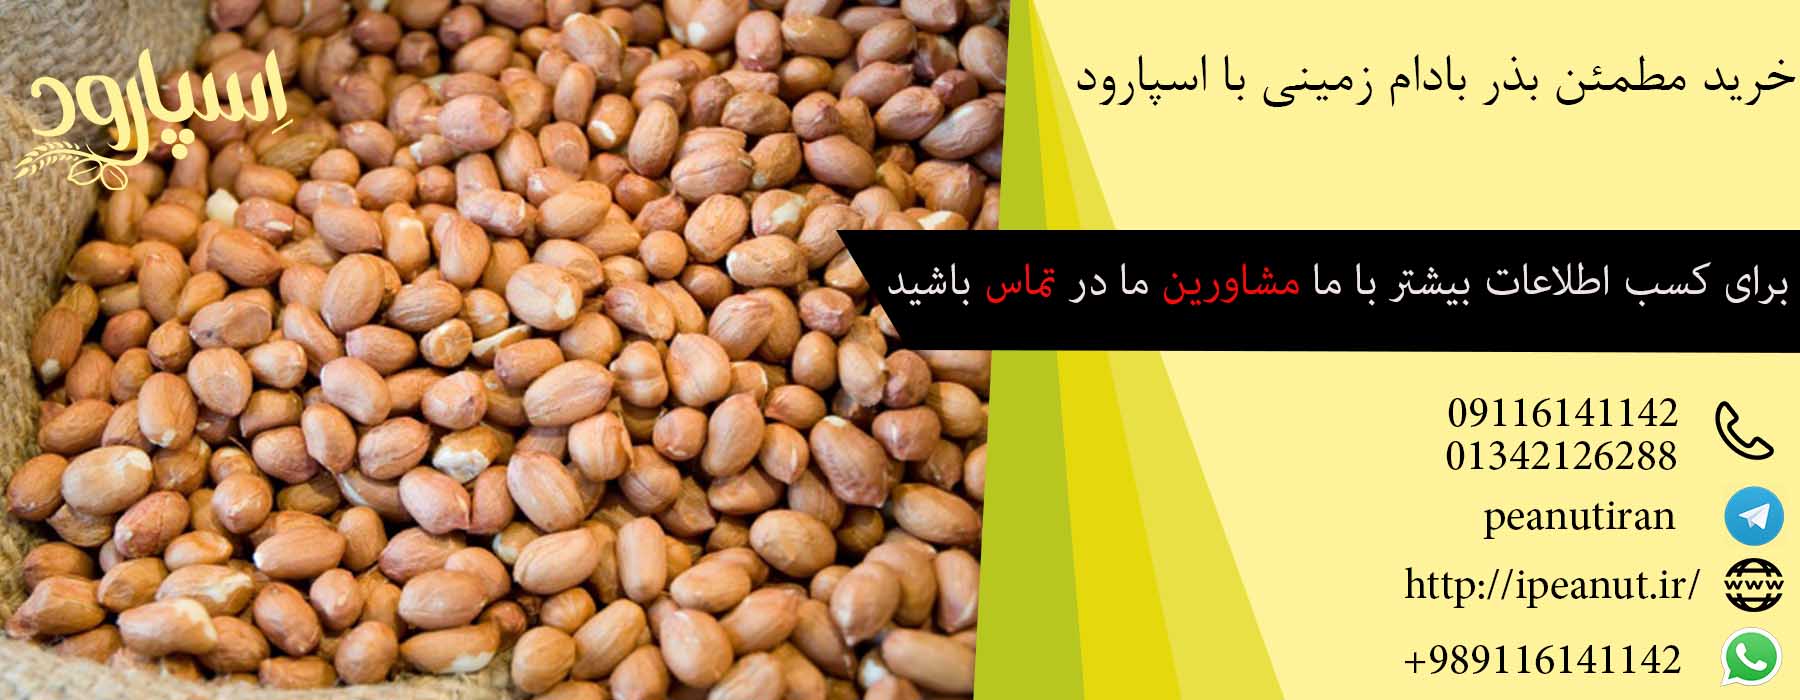 فروش بذر بادام زمینی در تهران